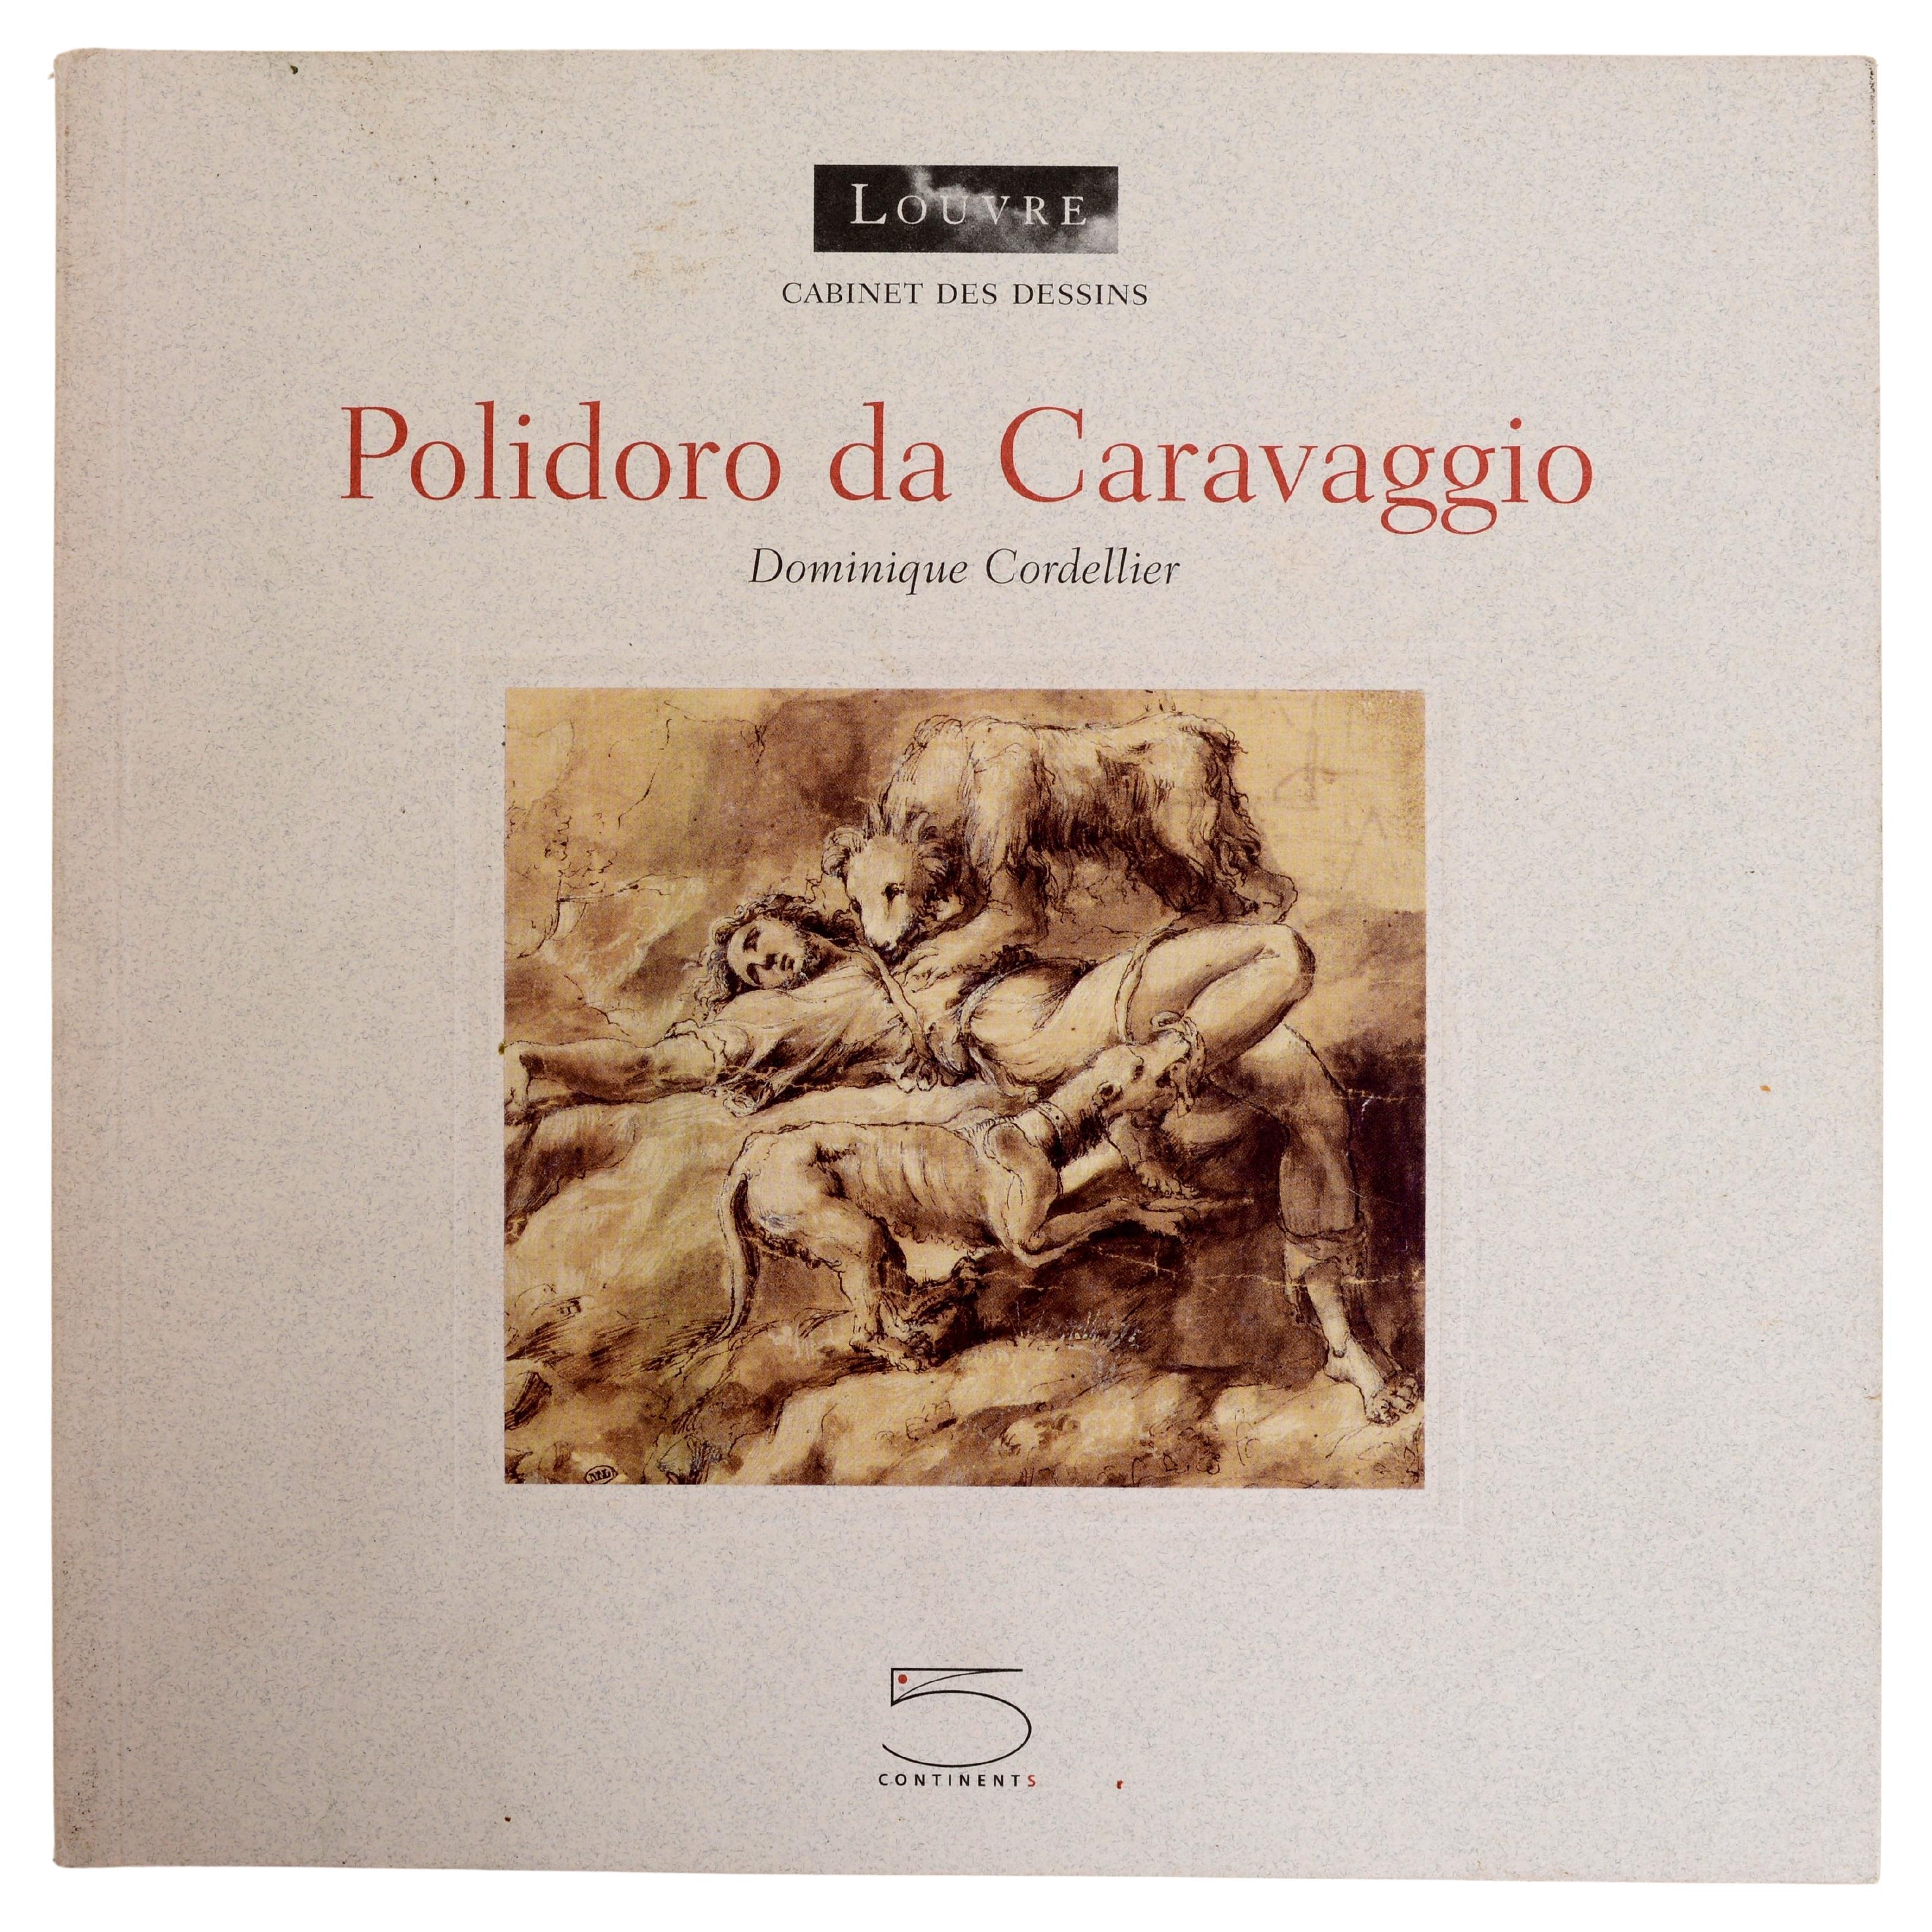 Polidoro da Caravaggio by Dominique Cordellier